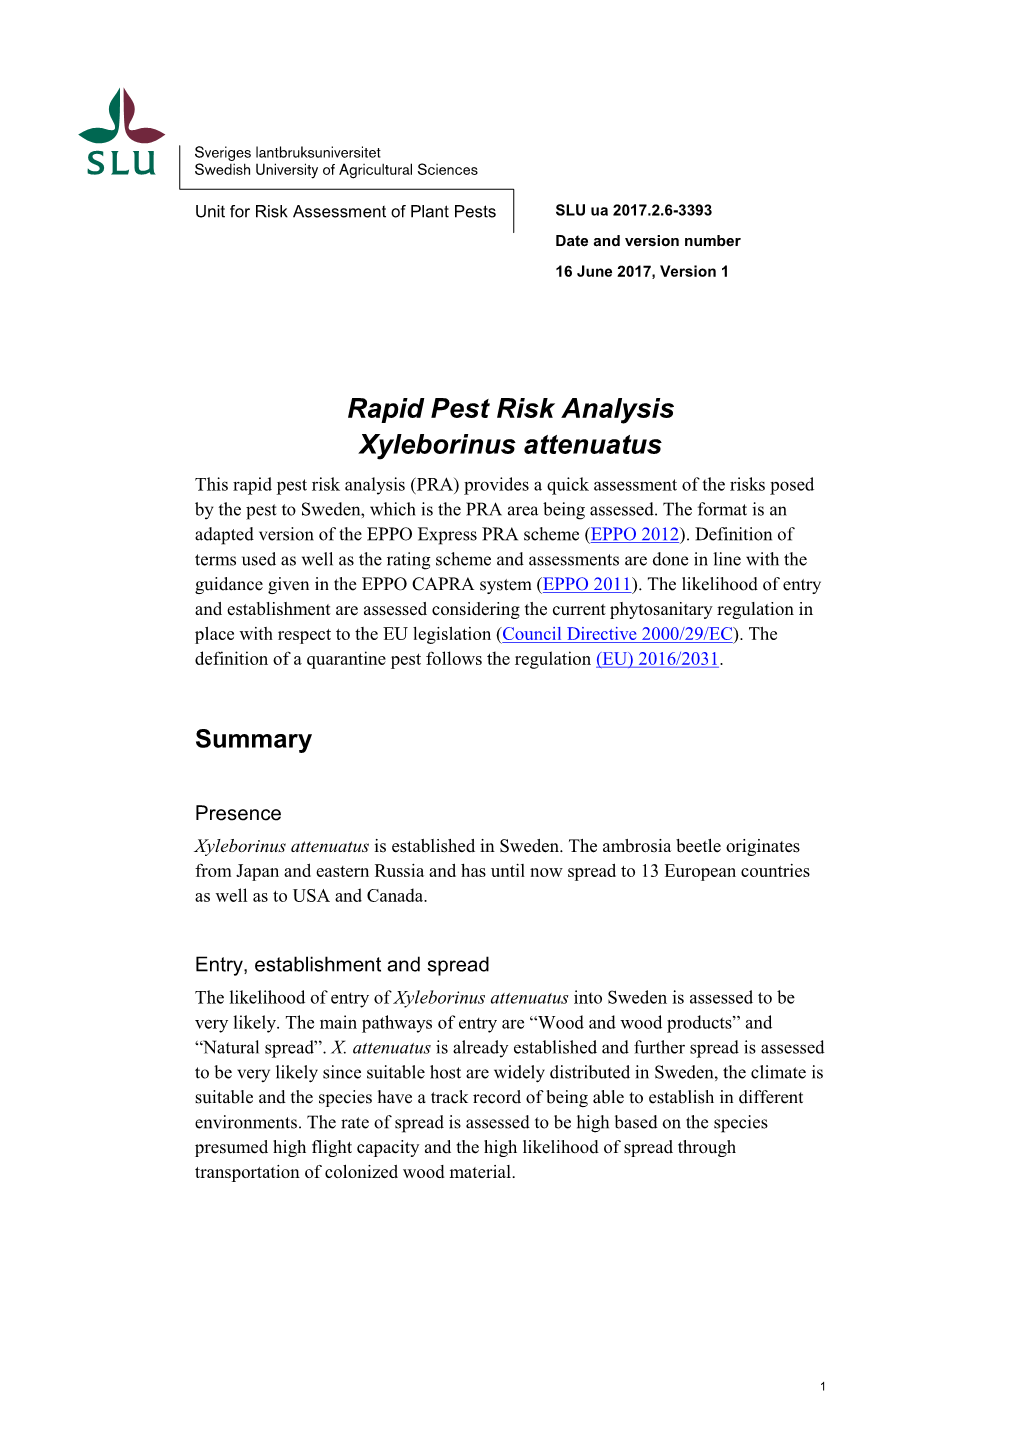 Rapid Pest Risk Analysis Xyleborinus Attenuatus